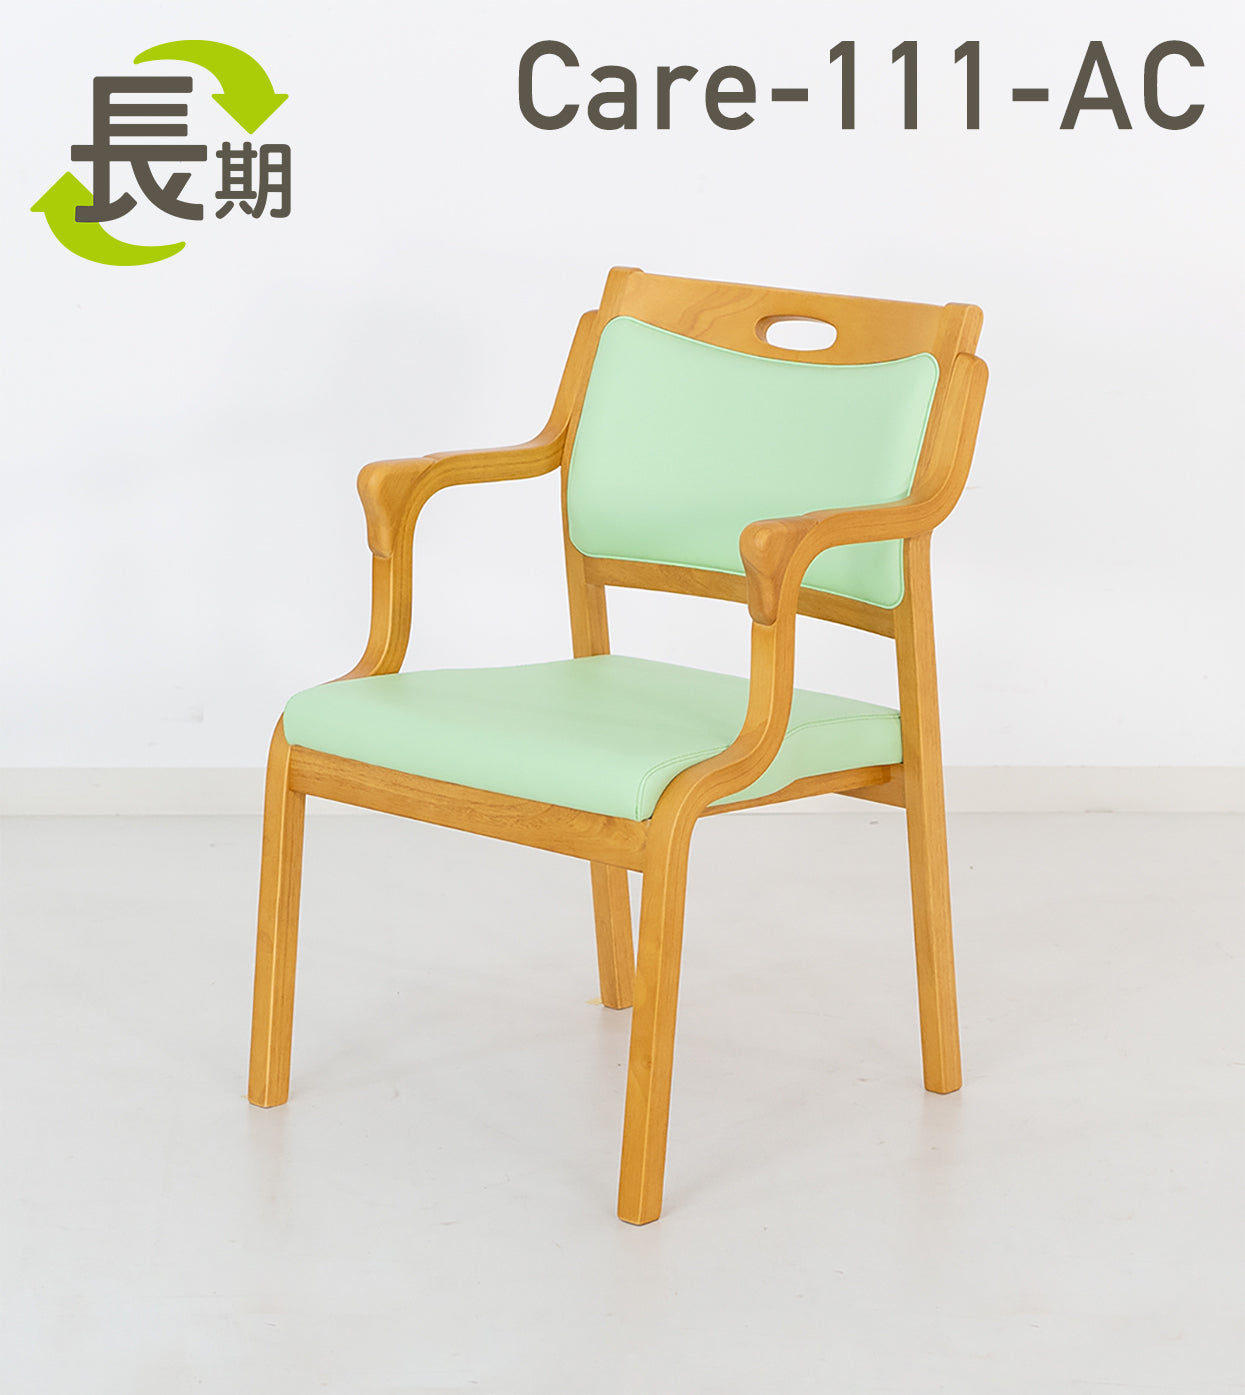 【長期レンタル】Care-111-AC – ささえて-高齢者向け家具のレンタル-